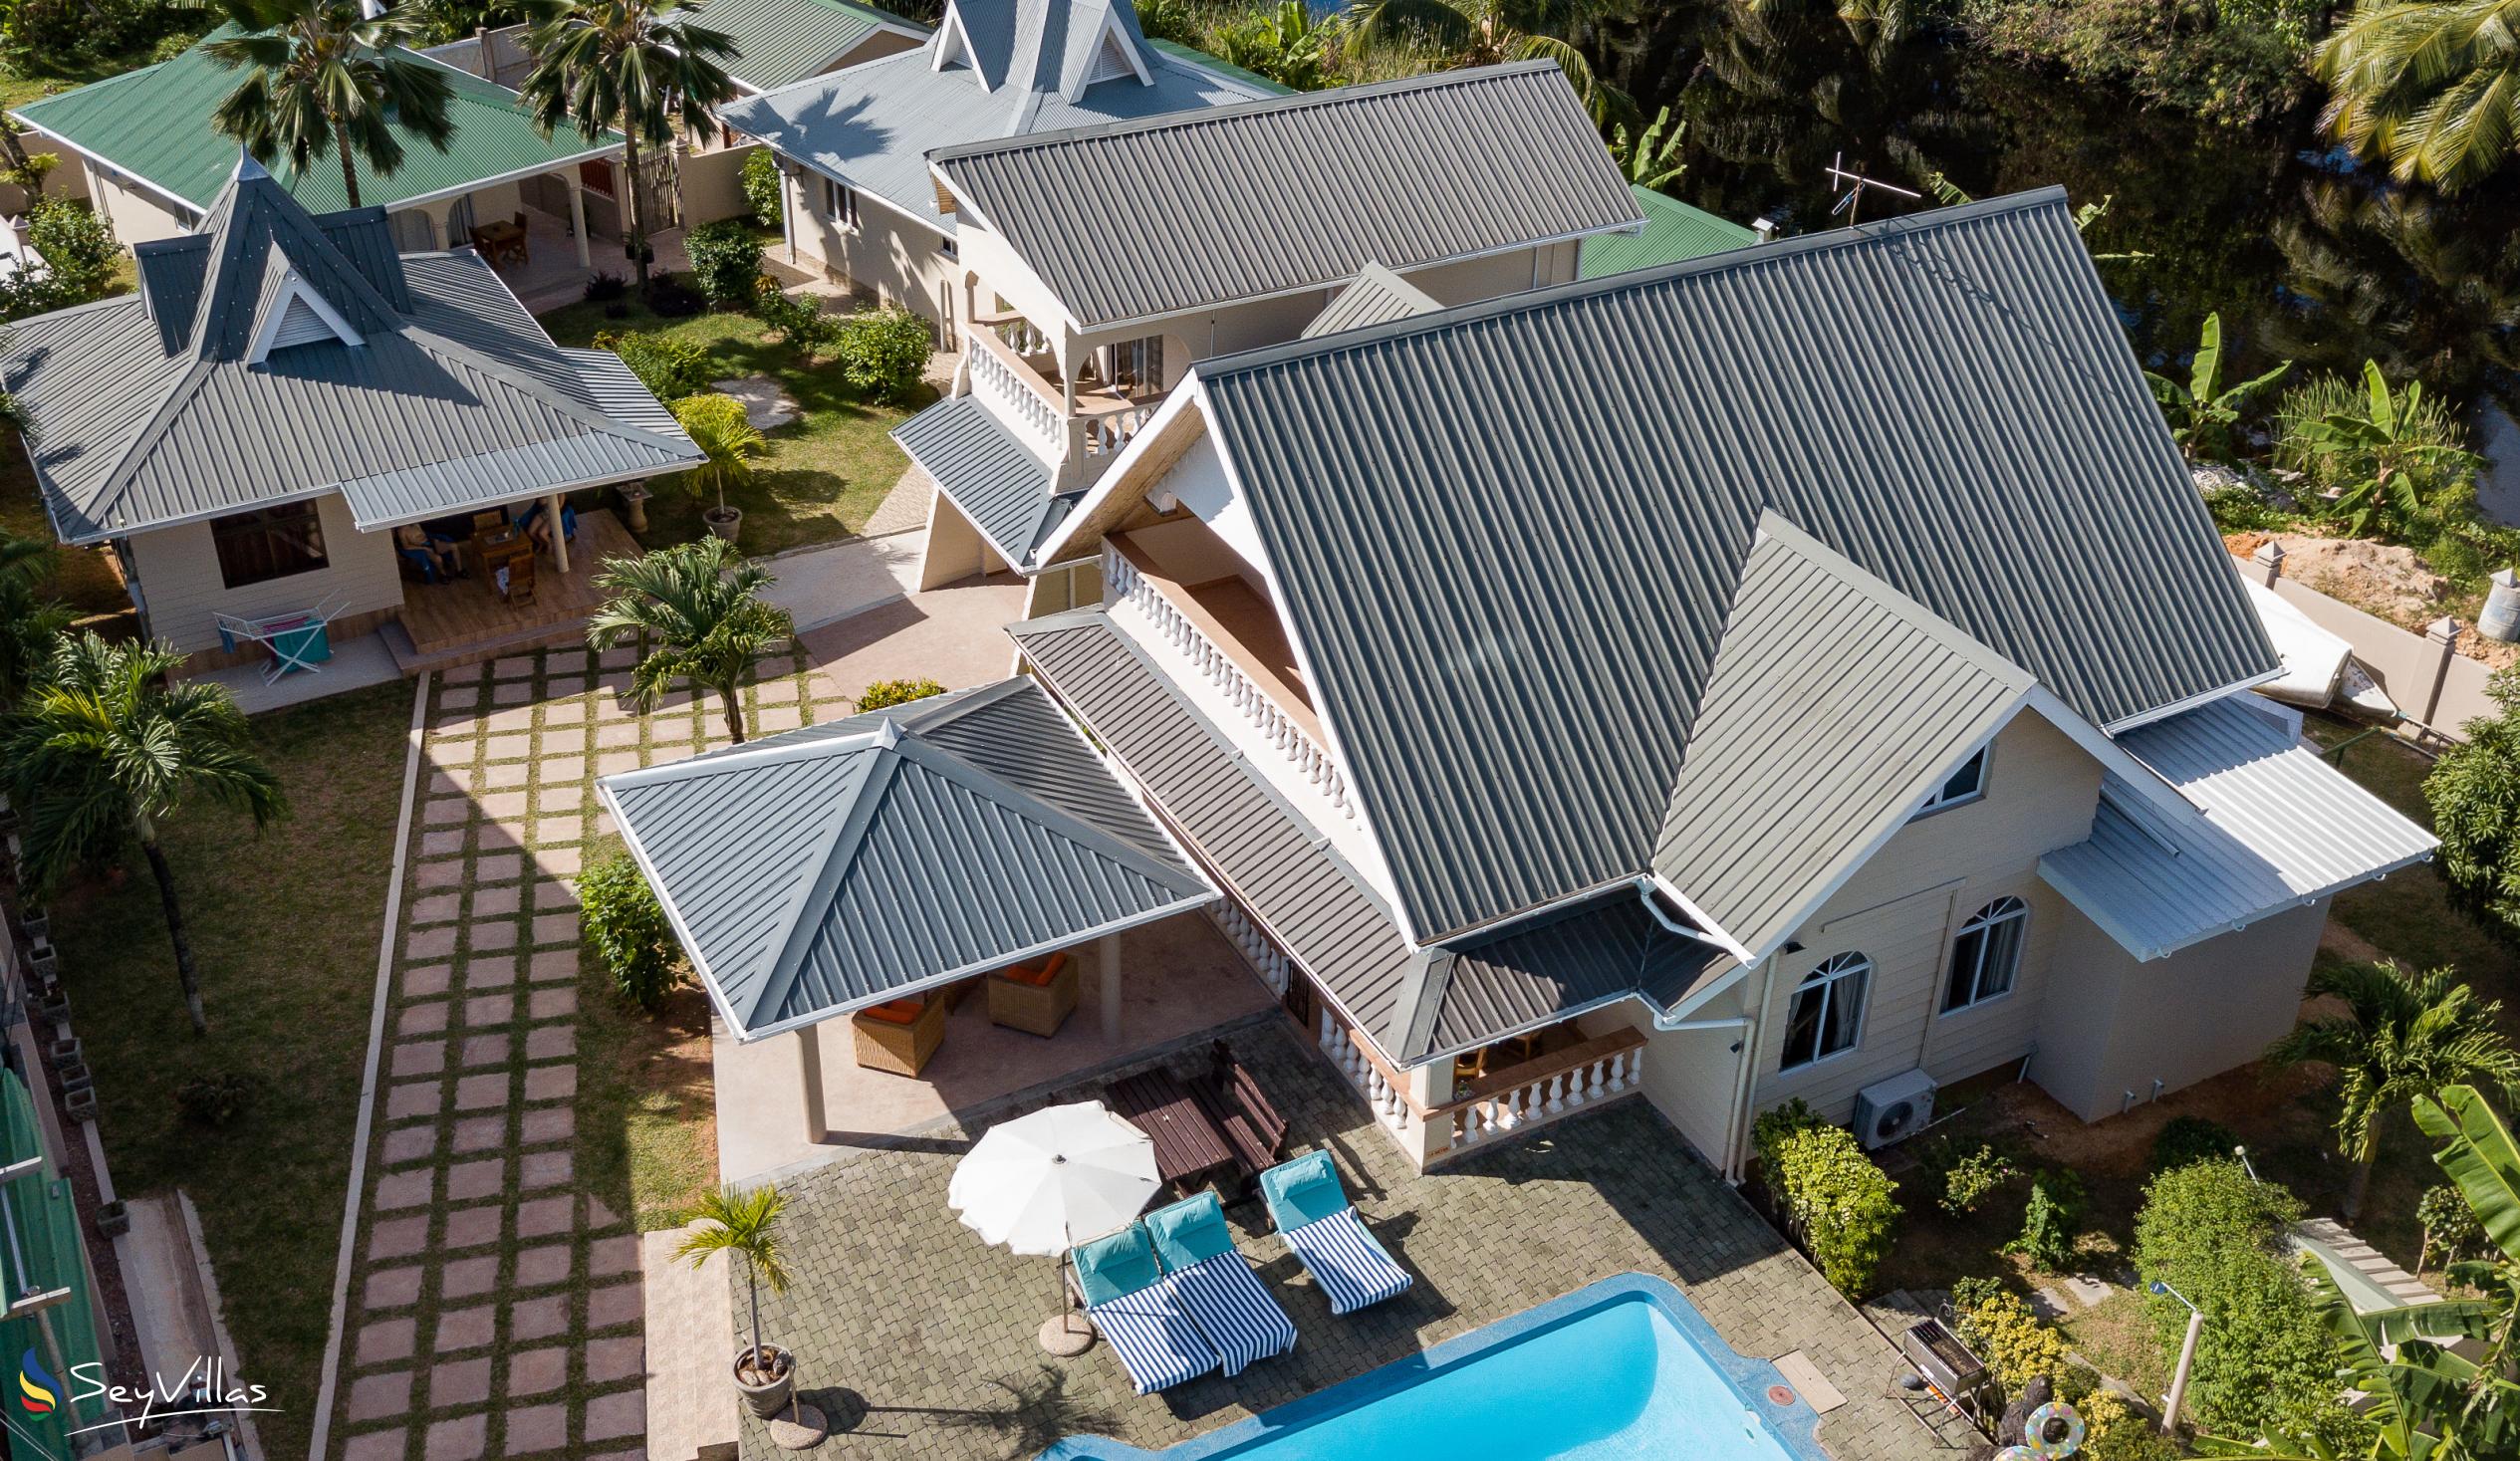 Photo 3: Villa Aya - Outdoor area - Praslin (Seychelles)